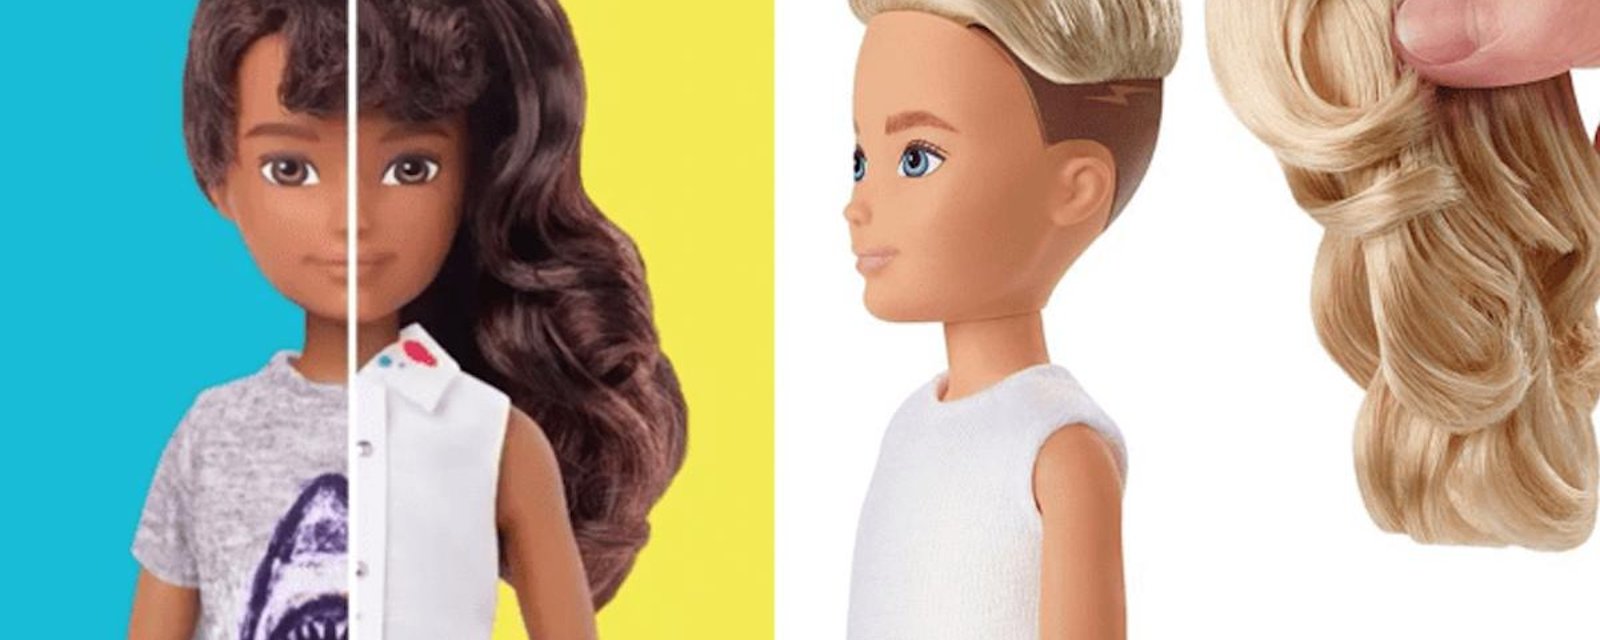 Pour lutter contre les stéréotypes, Mattel lance une première collection de poupées Barbie non-genrées